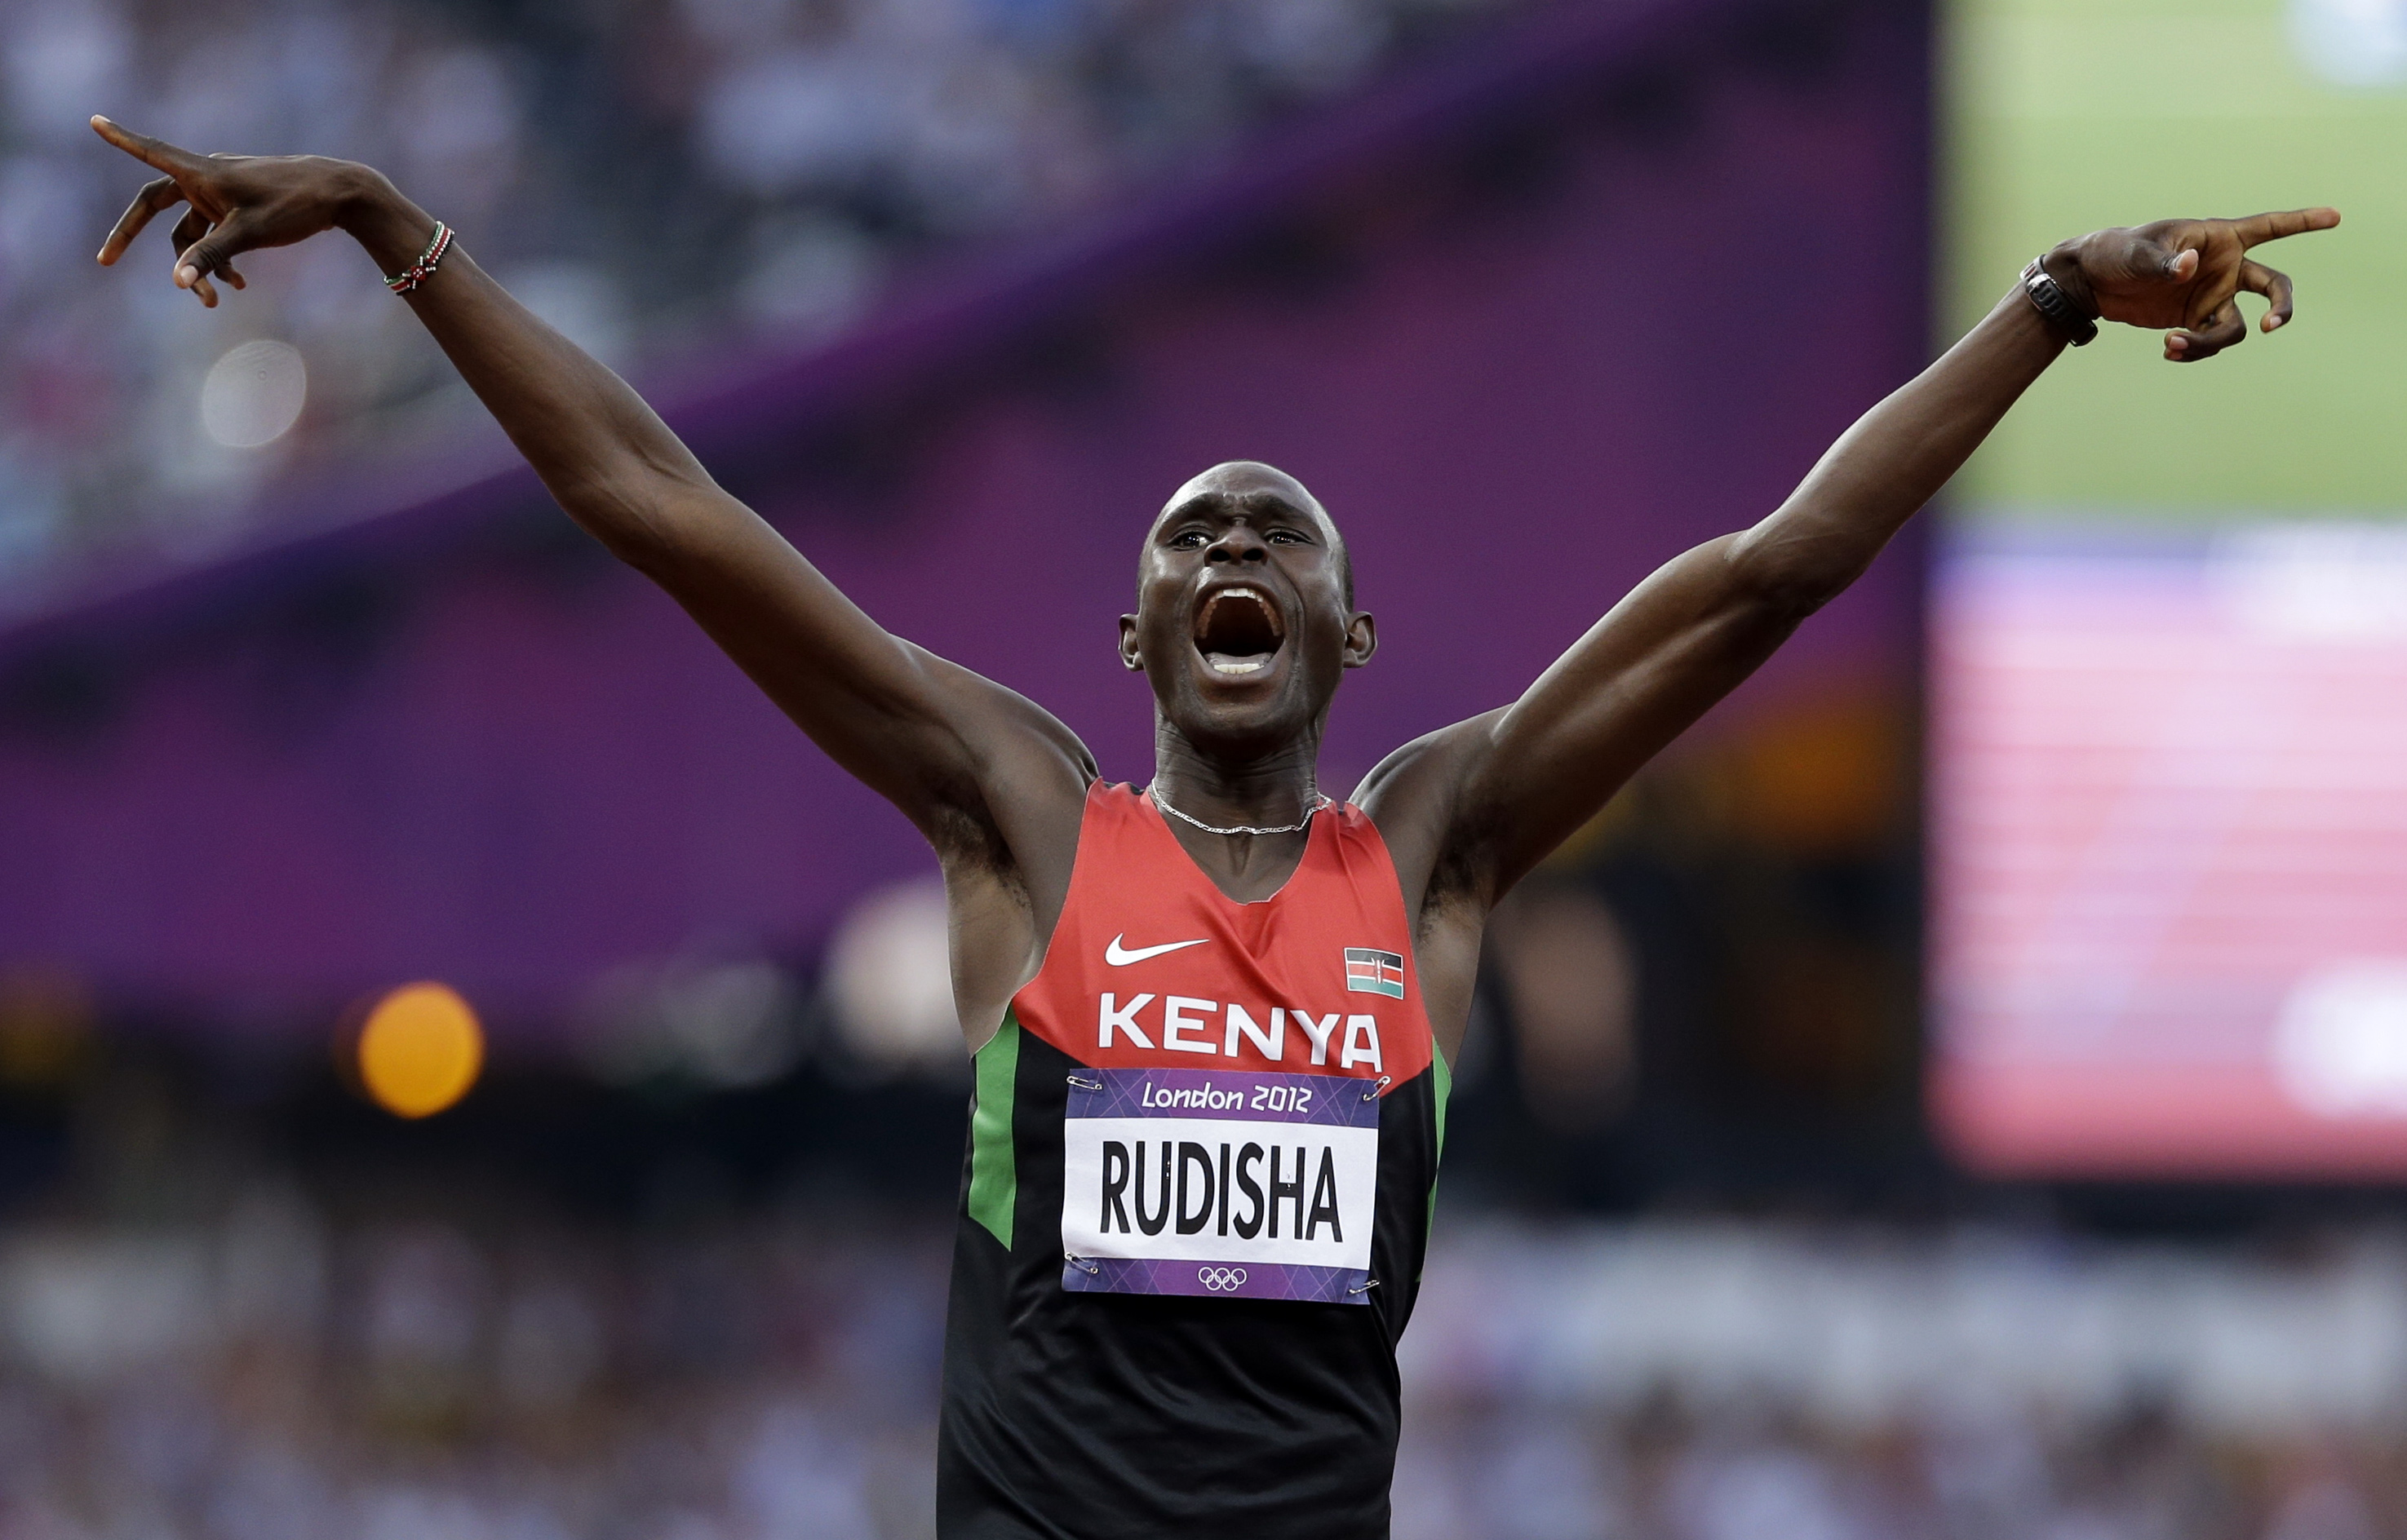 London, Olympiska spelen, Världsrekord, Kenya, David Lekuta Rudisha